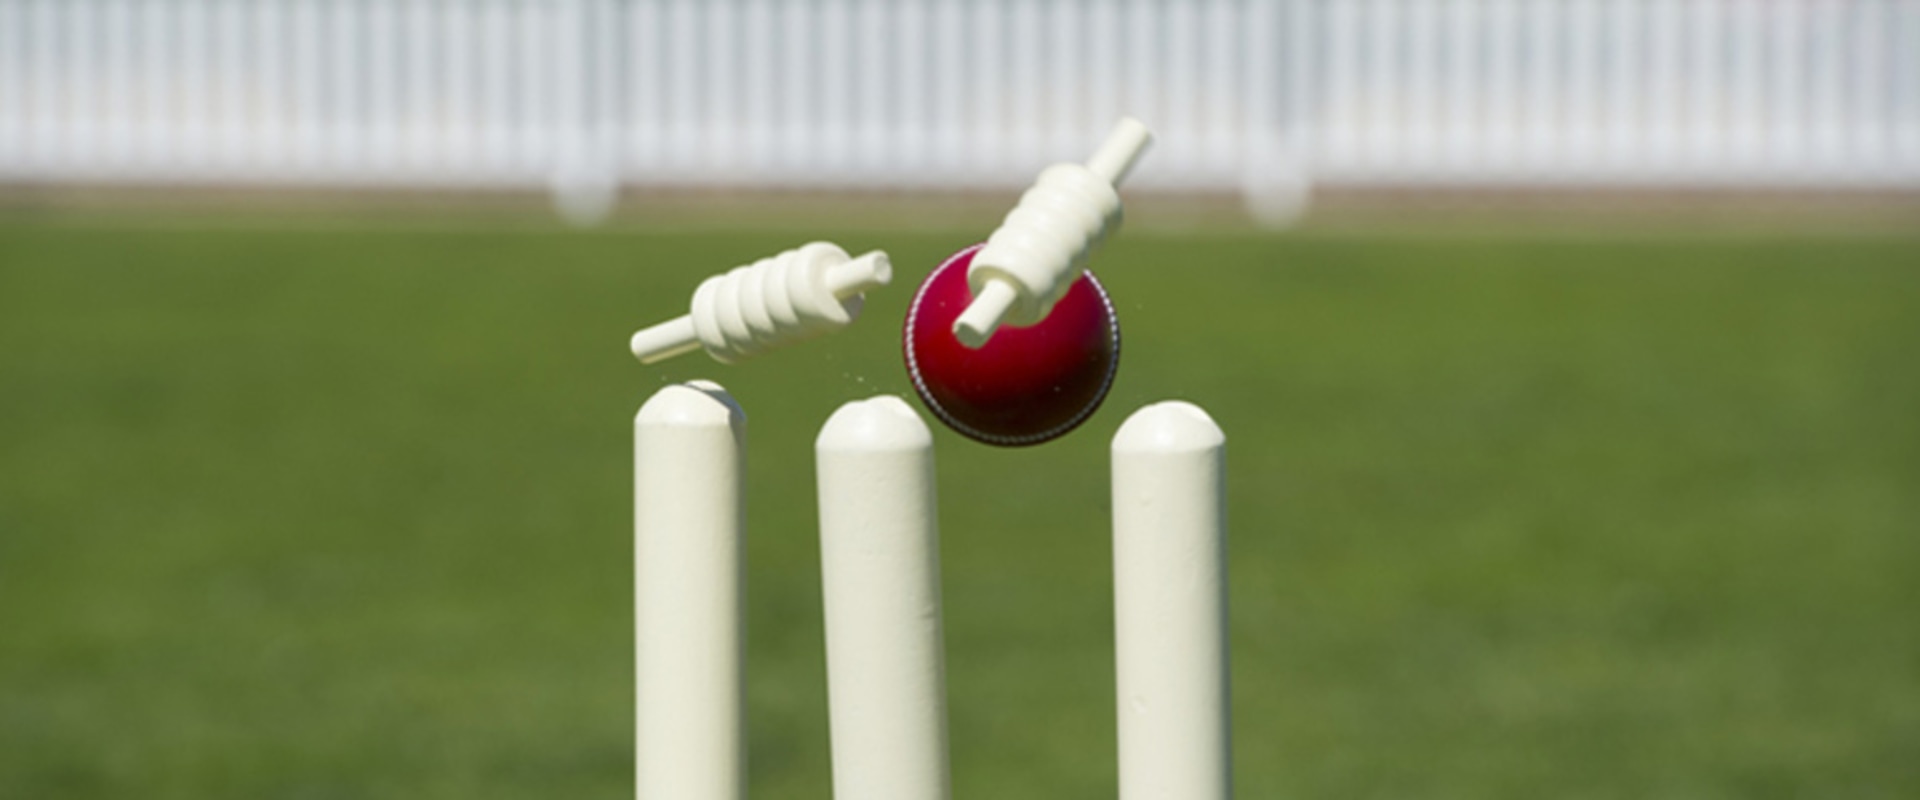 Understanding Cricket Odds